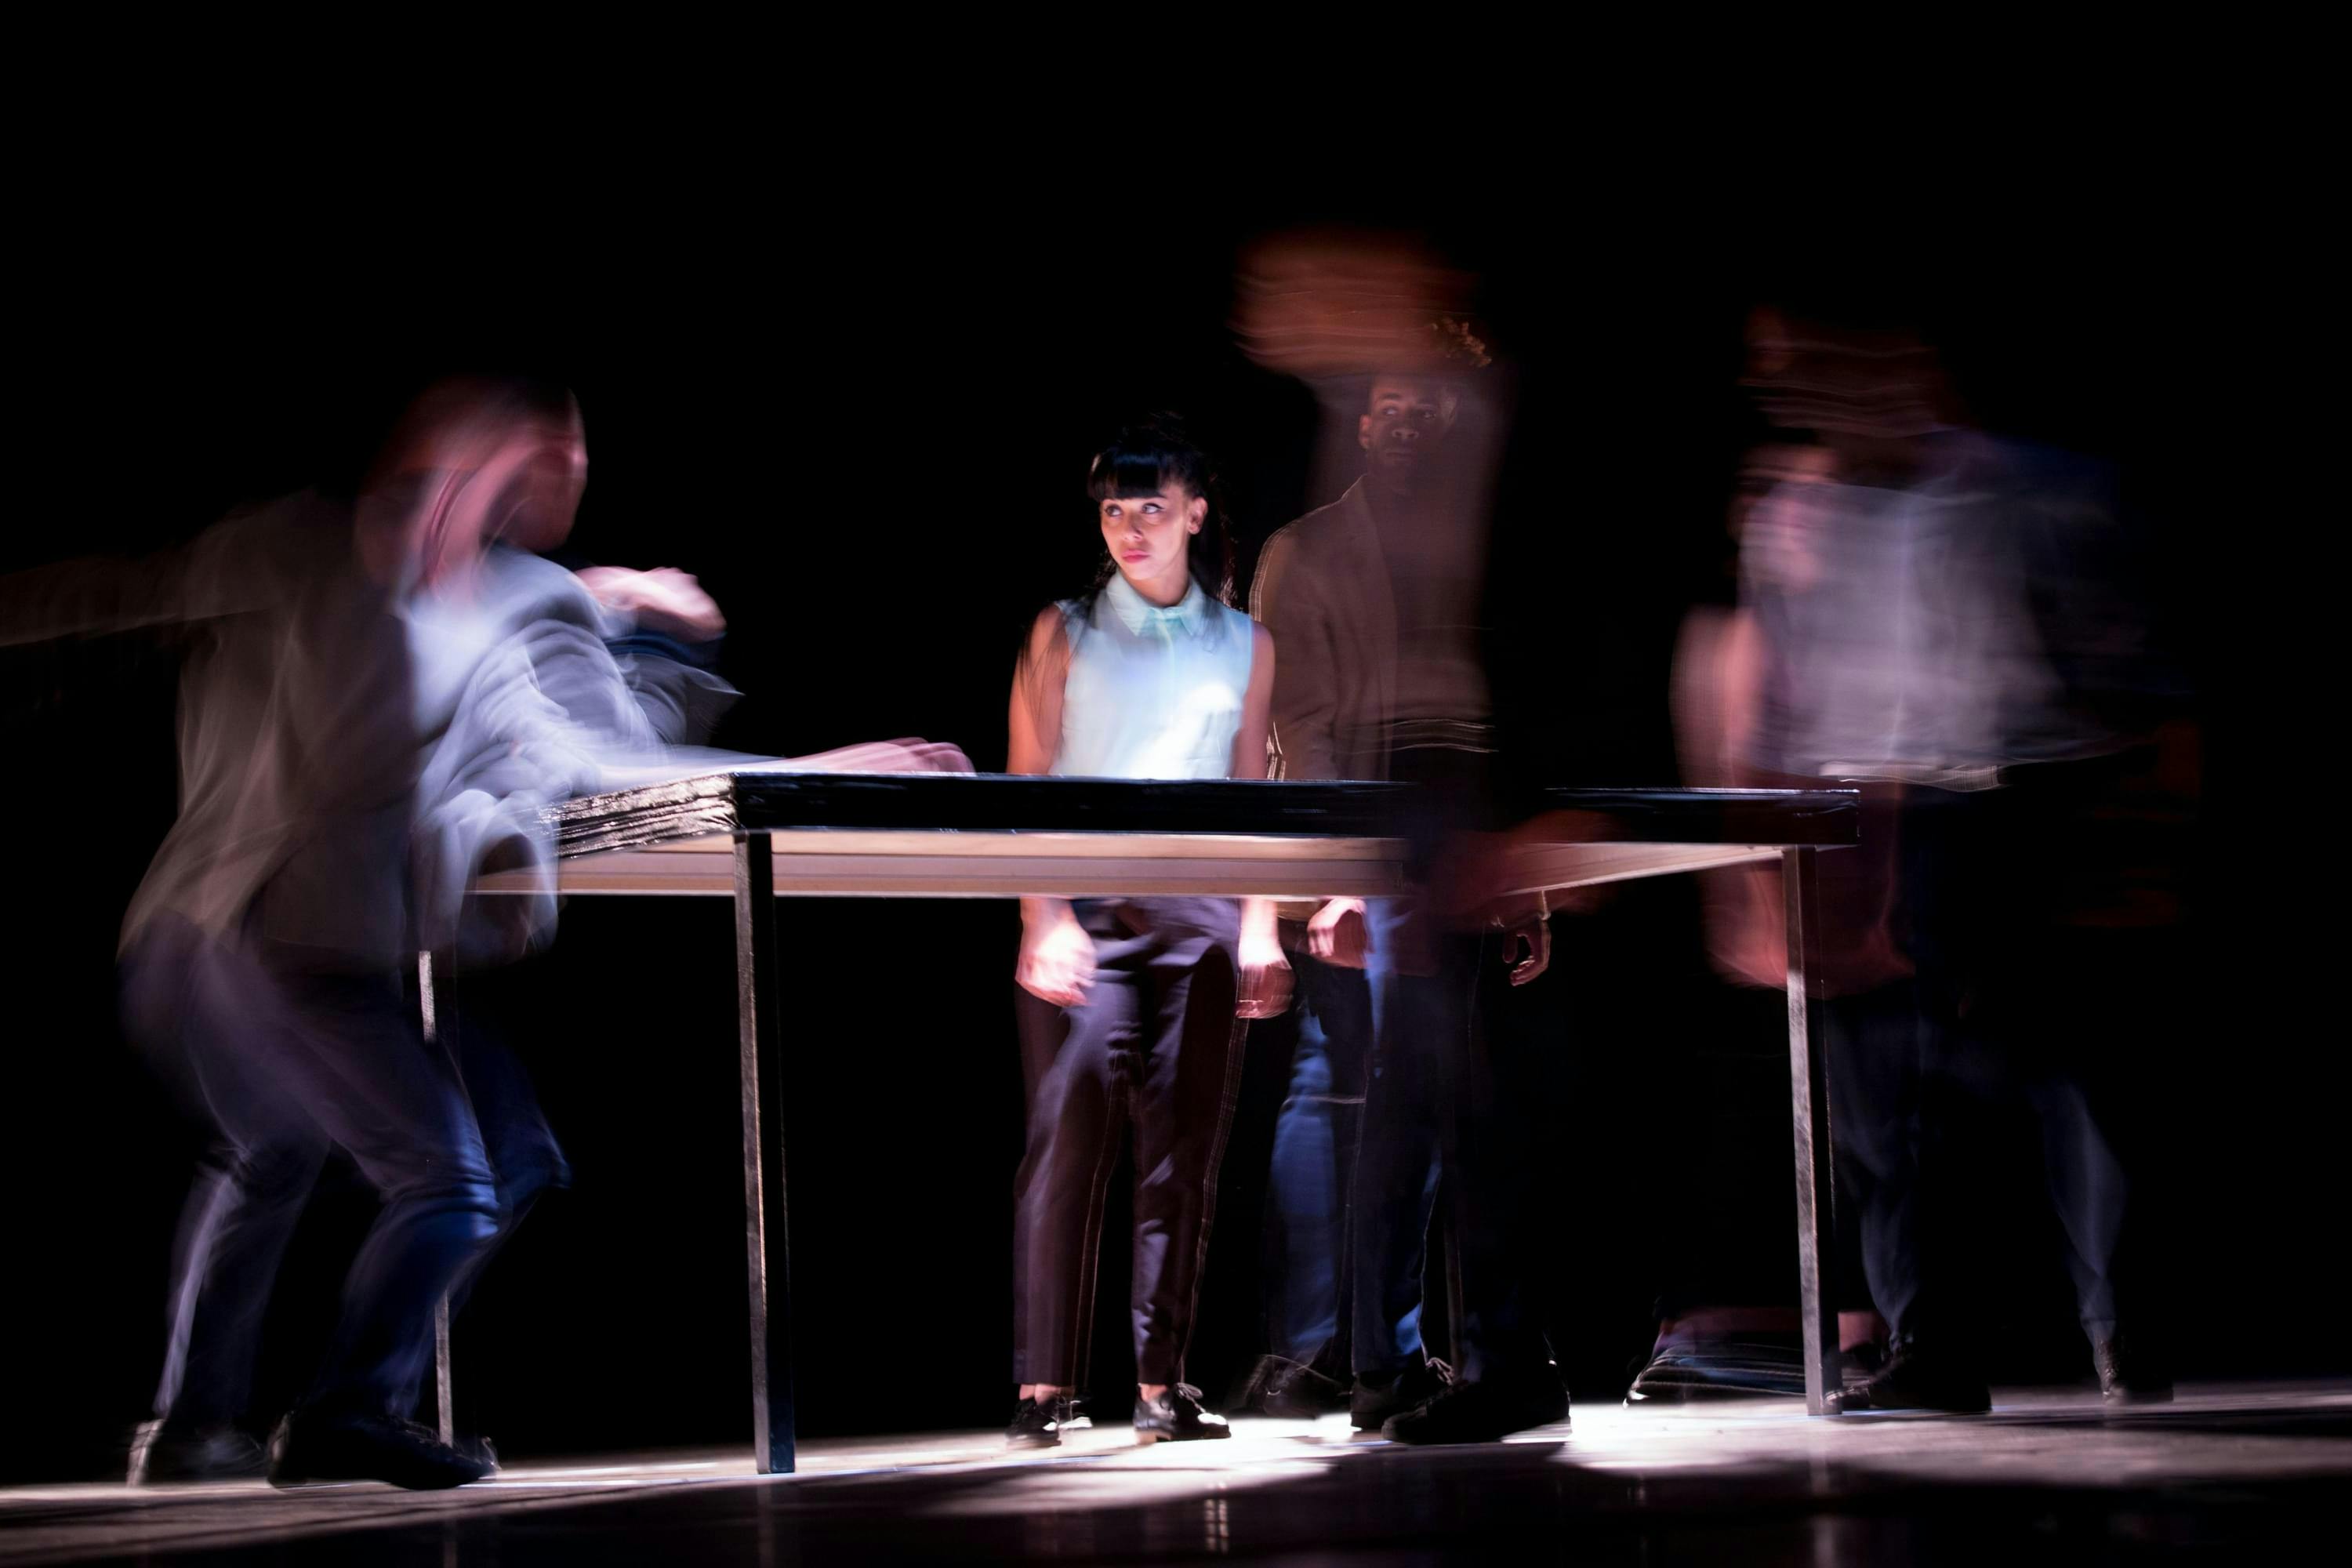 Vier mensen bewegen rondom dezelfde tafel. De foto is gemaakt met een multiple exposure effect, hierdoor worden de bewegingen zichtbaar maar tegelijkertijd abstract. Innovatief werken is meebewegen met veranderende situaties.